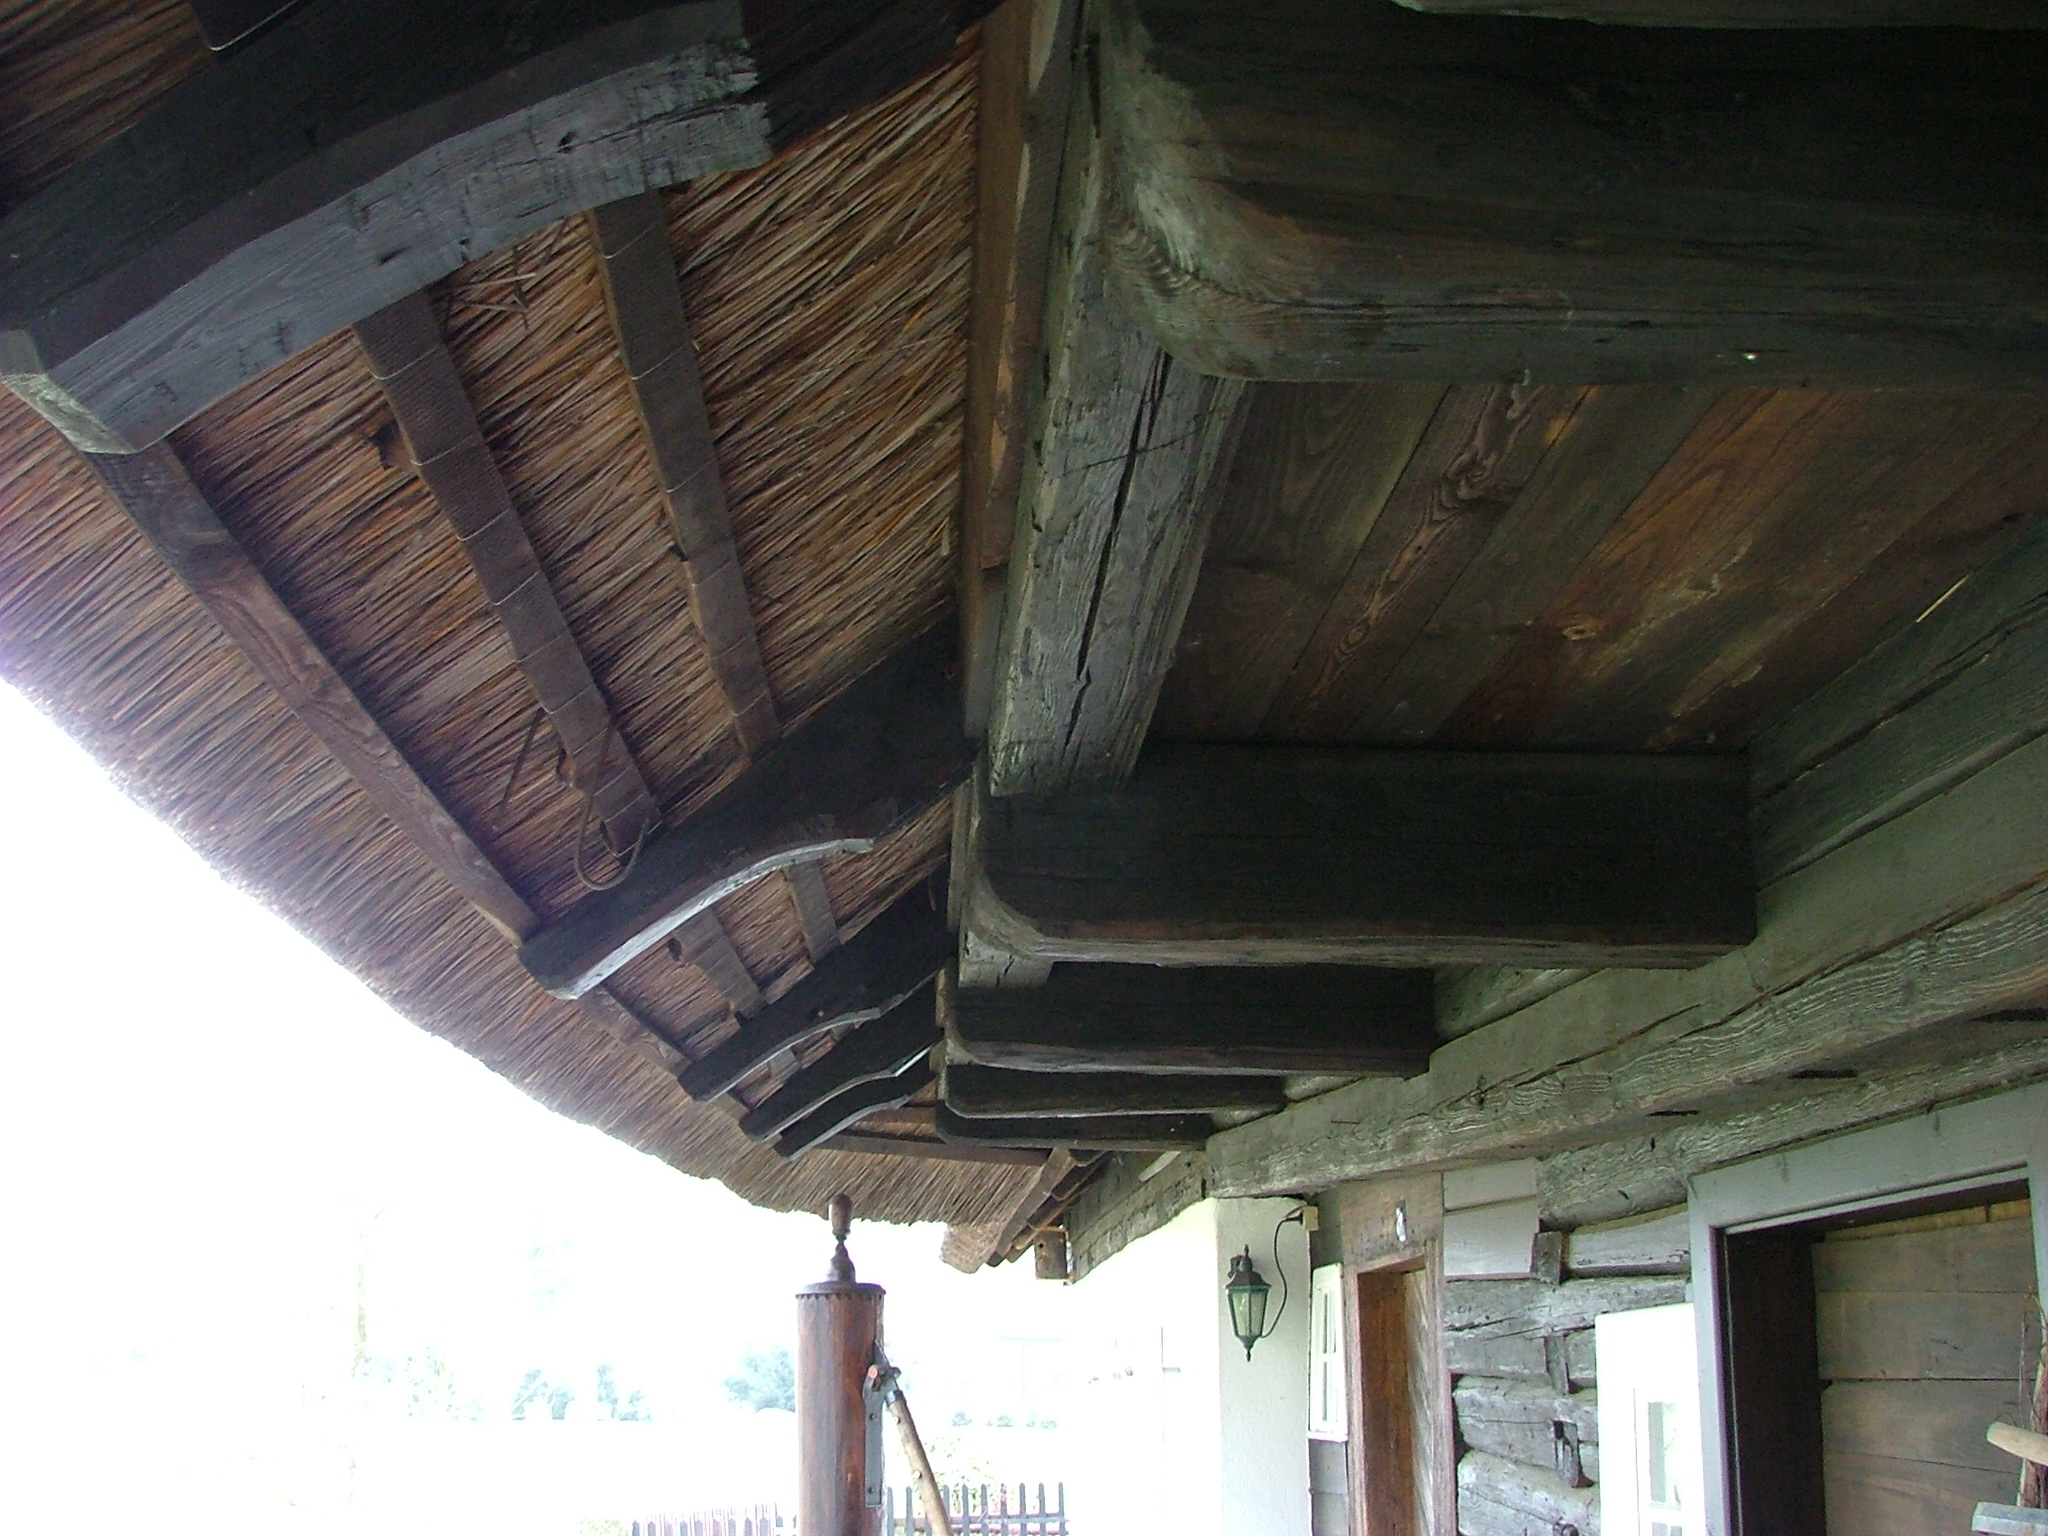 historischer Dachüberhang